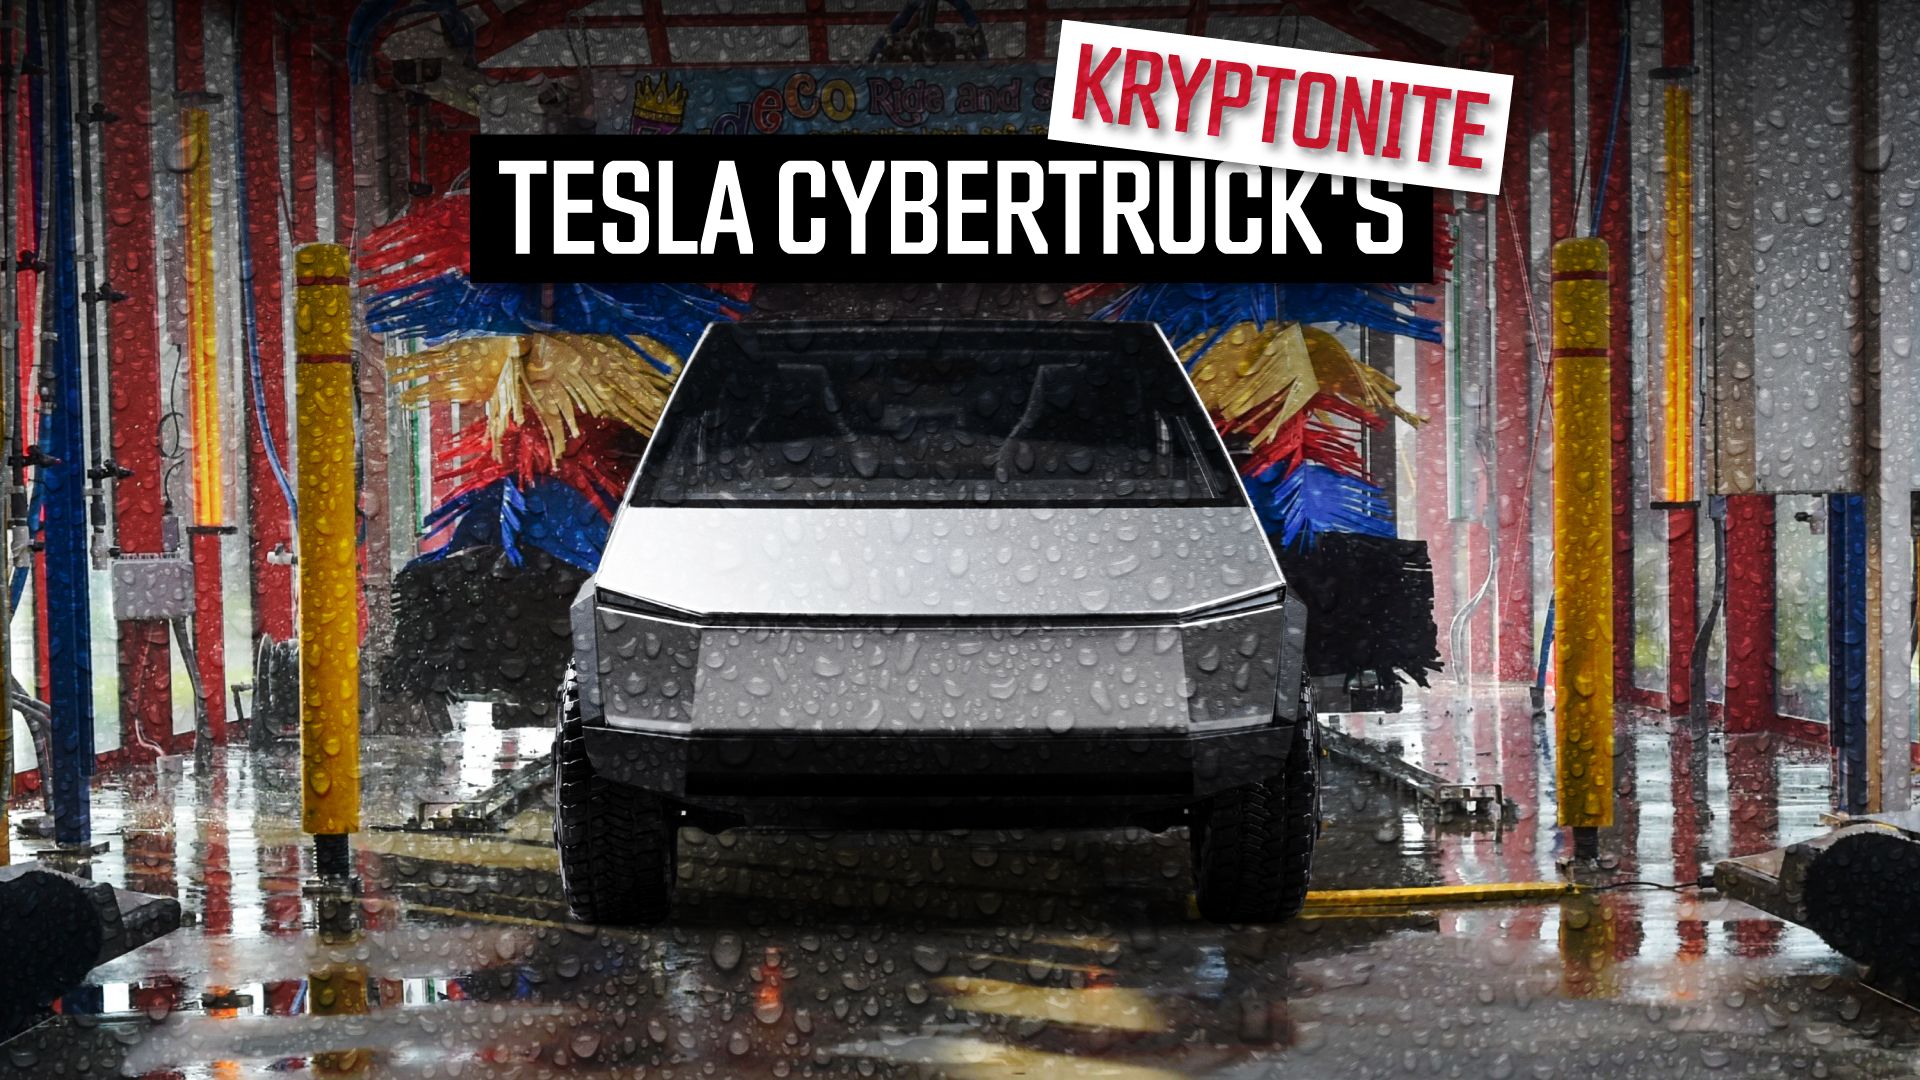 Tesla-Cybertruck's-Kryptonite